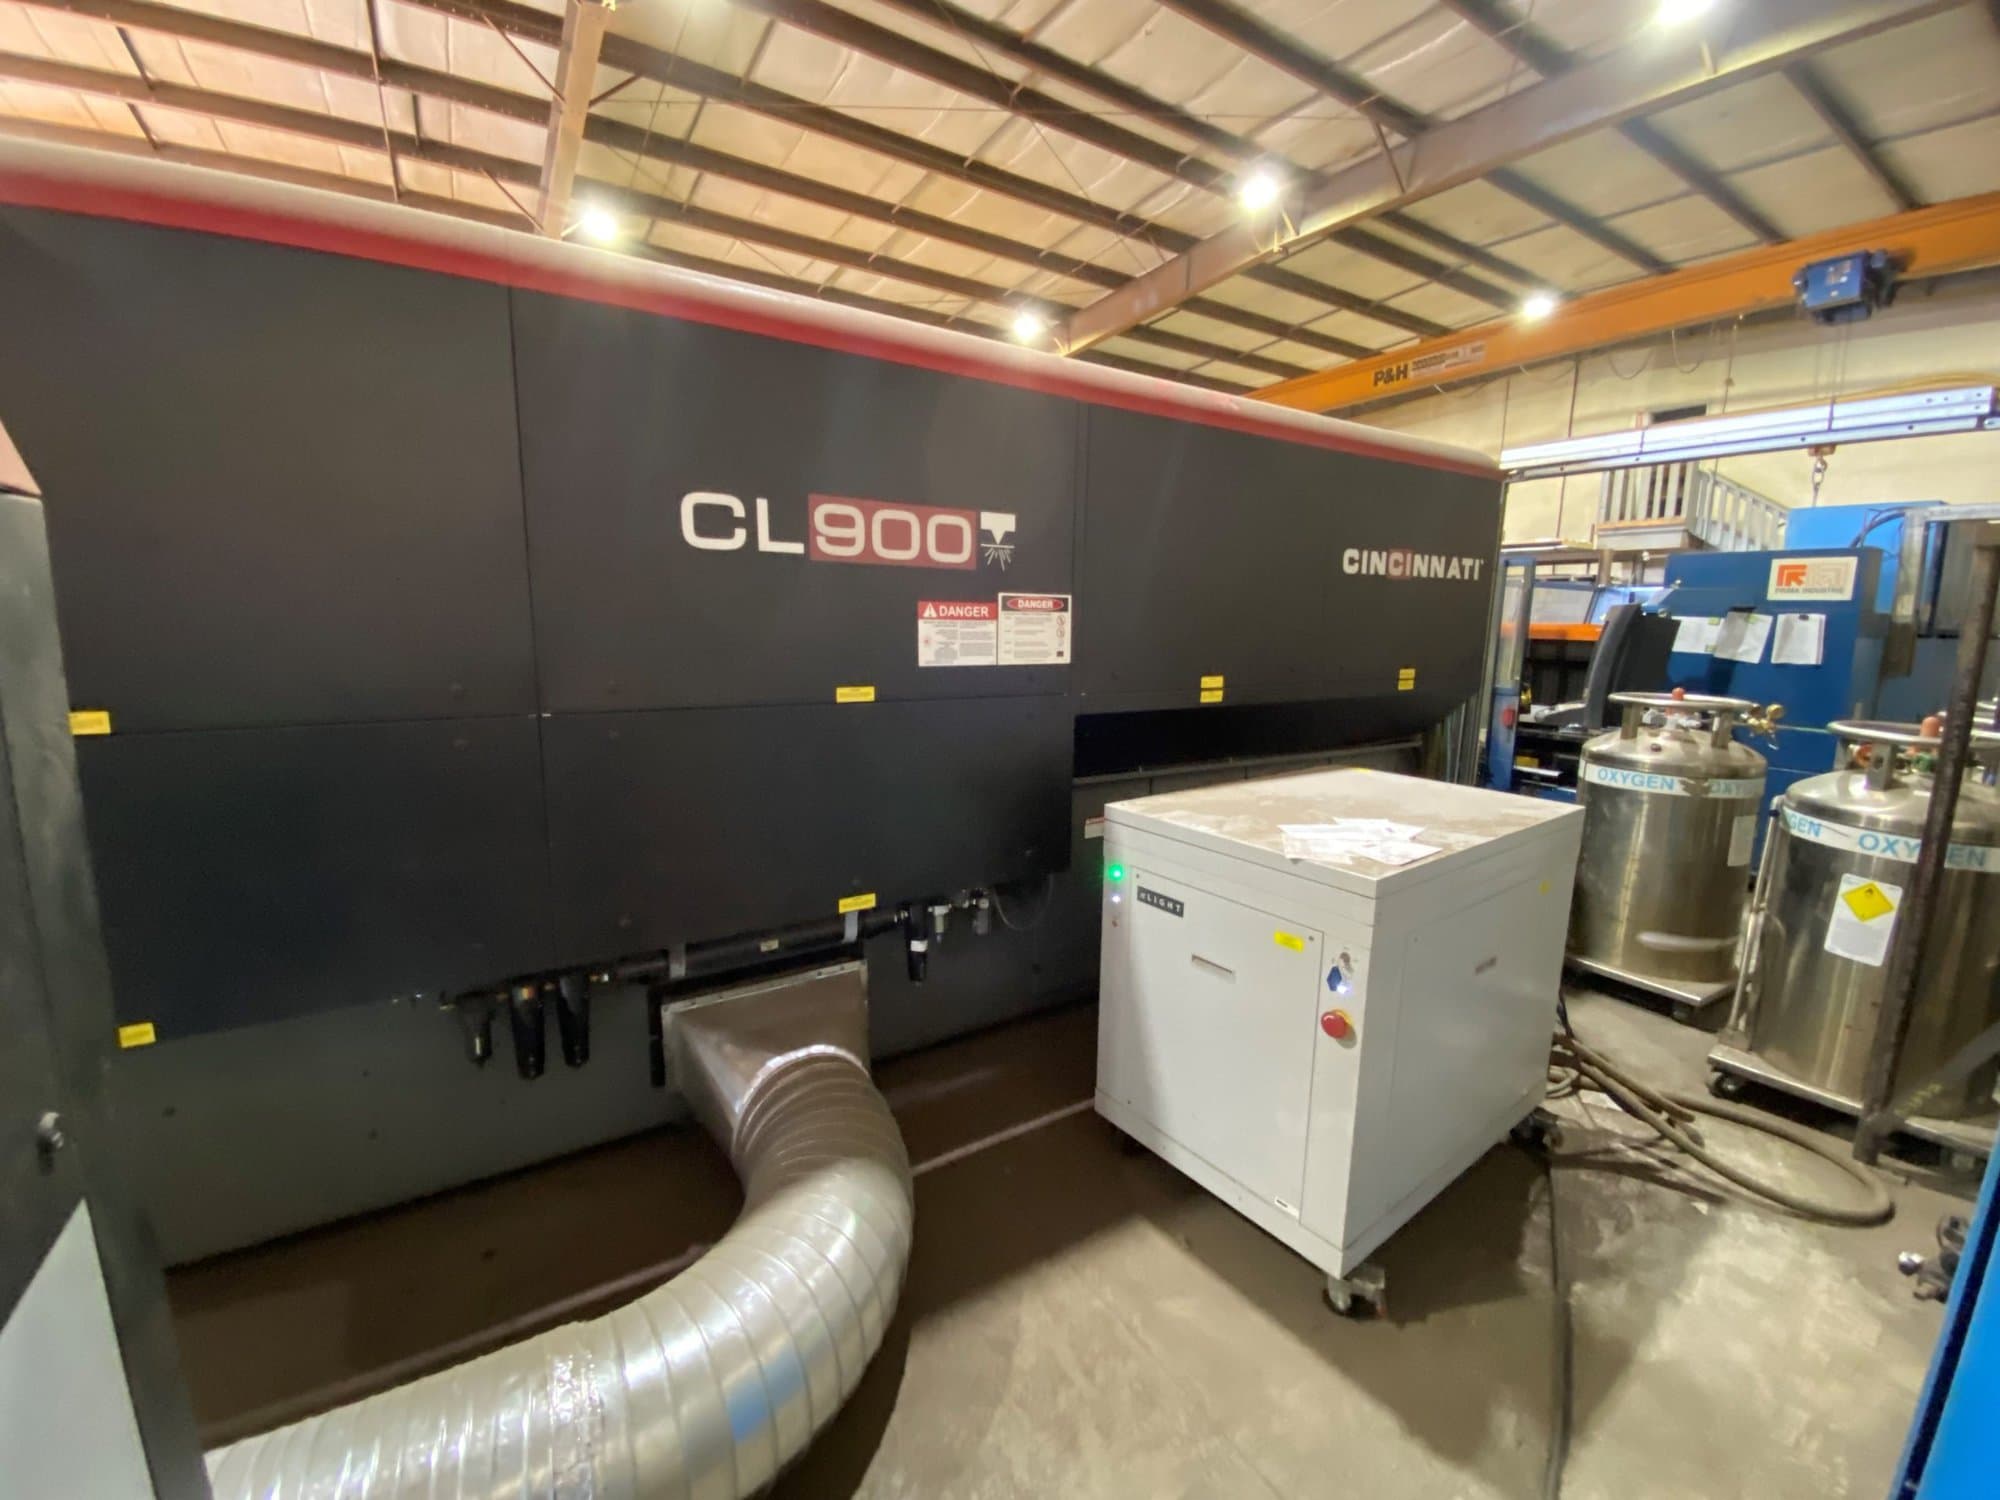 CL-900 Fiber Laser System — Cincinnati Incorporated